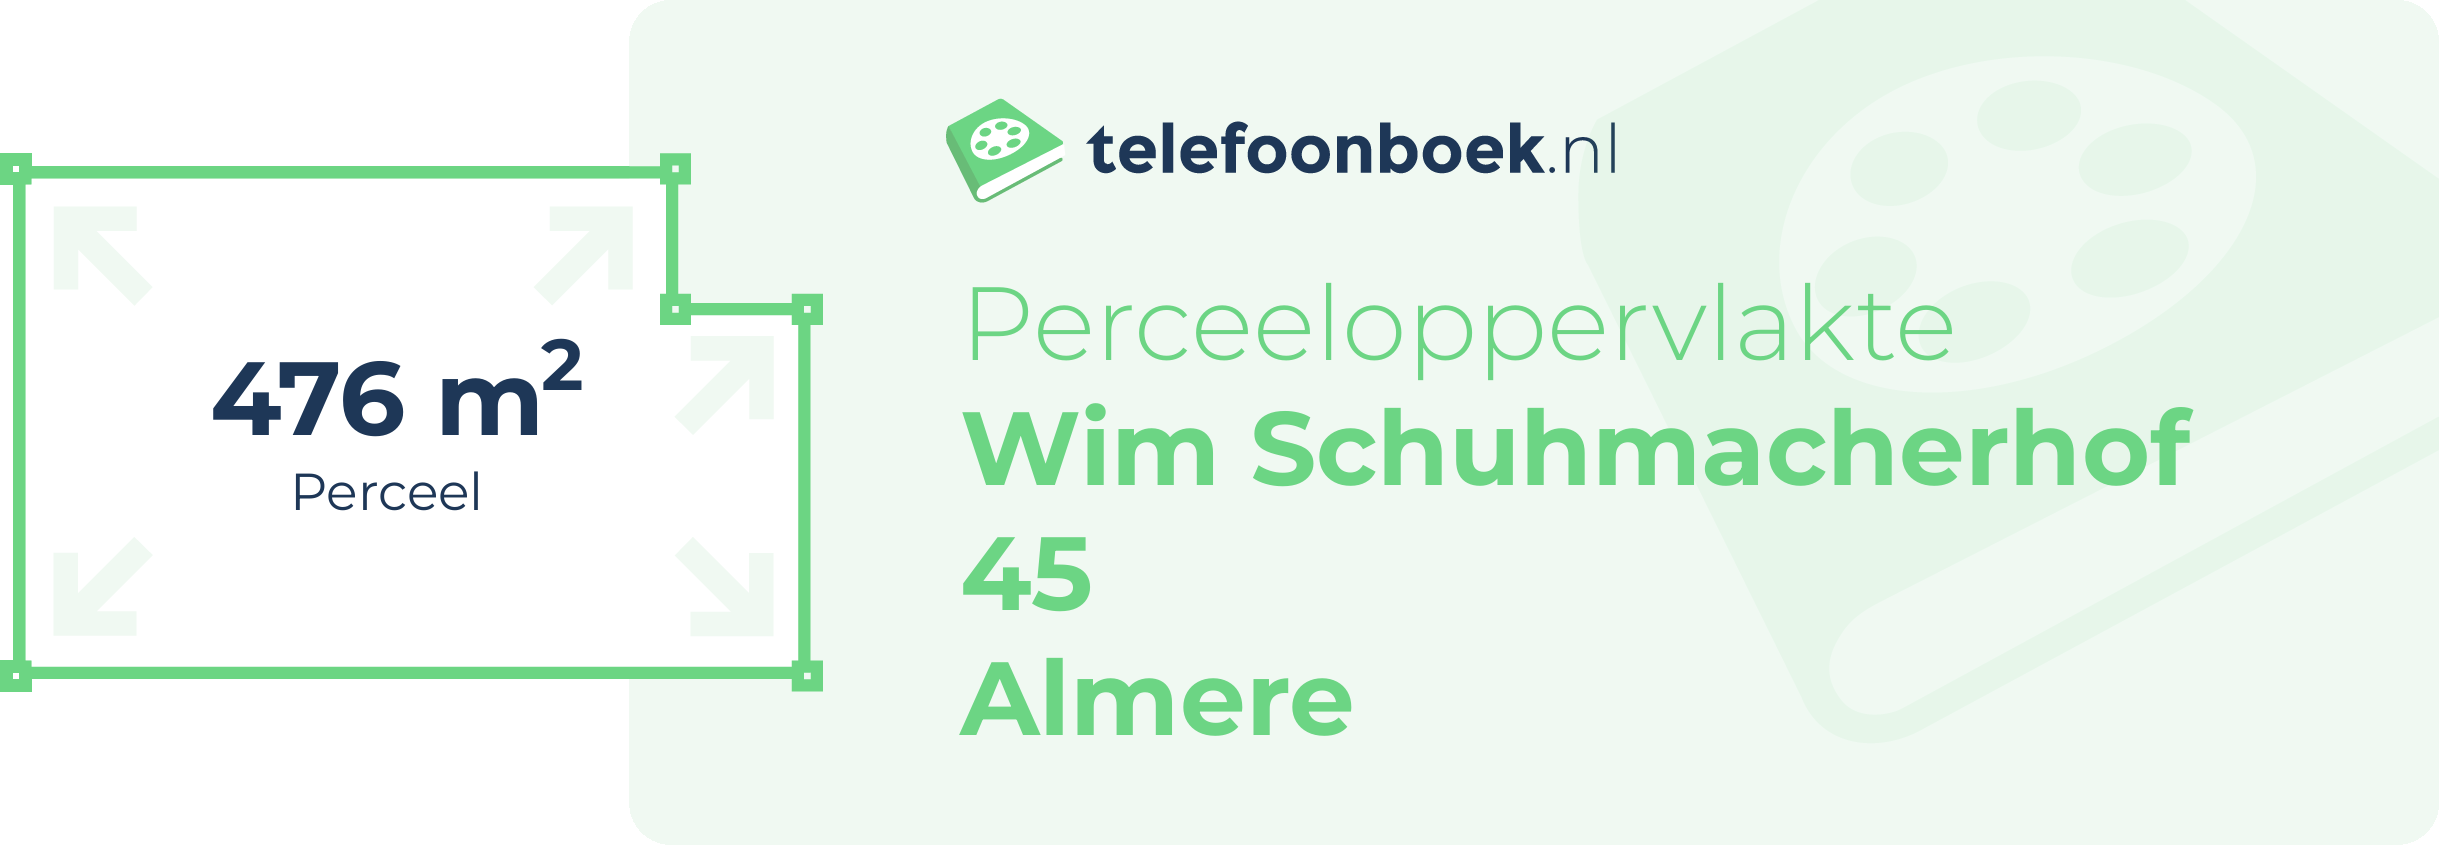 Perceeloppervlakte Wim Schuhmacherhof 45 Almere